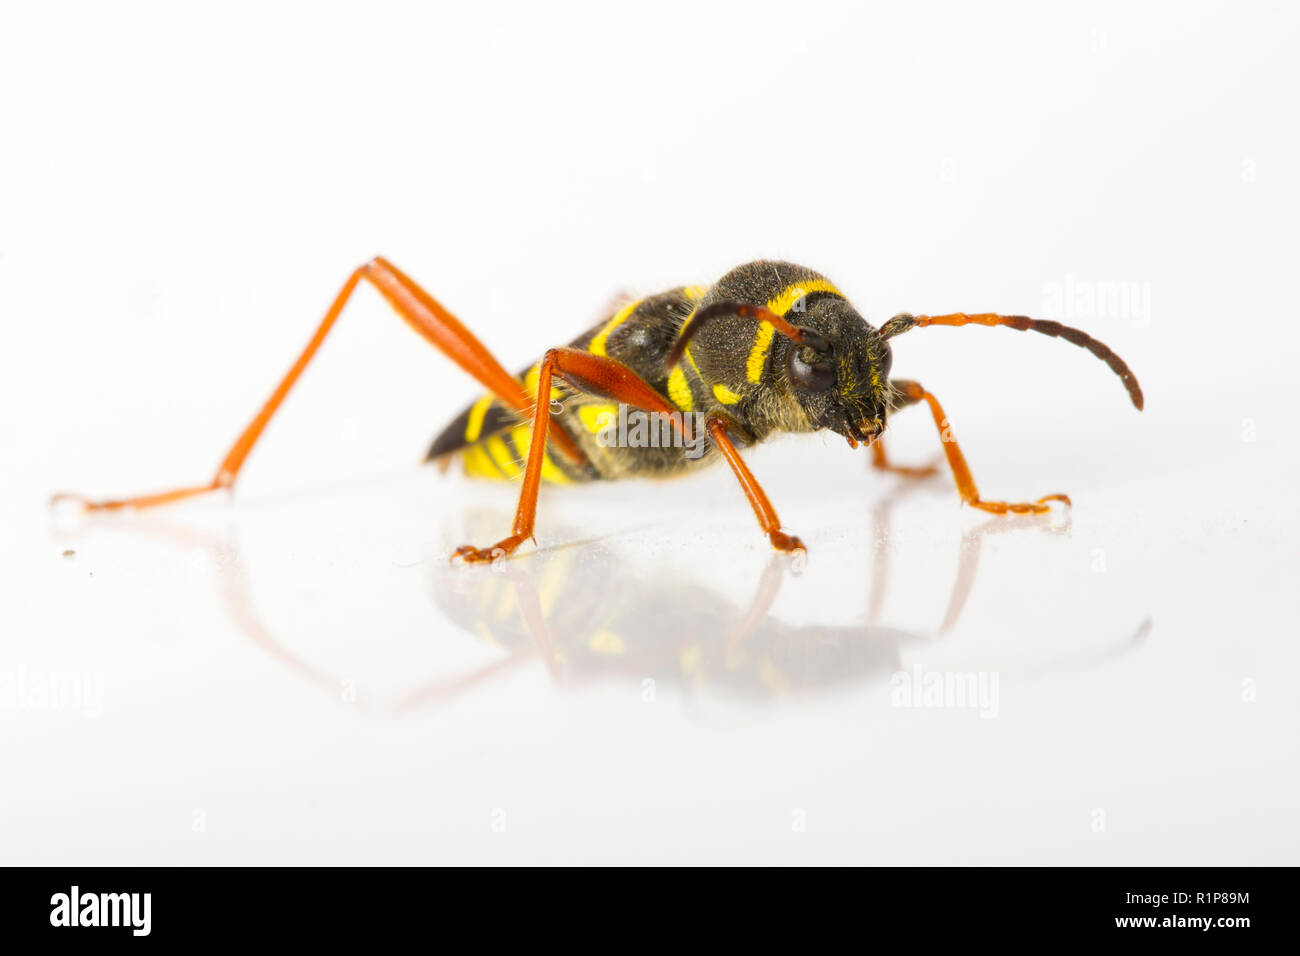 Wasp Käfer (Clytus arietis) Erwachsenen, live Insekt auf weißem Hintergrund fotografiert. Powys, Wales. Juni. Stockfoto